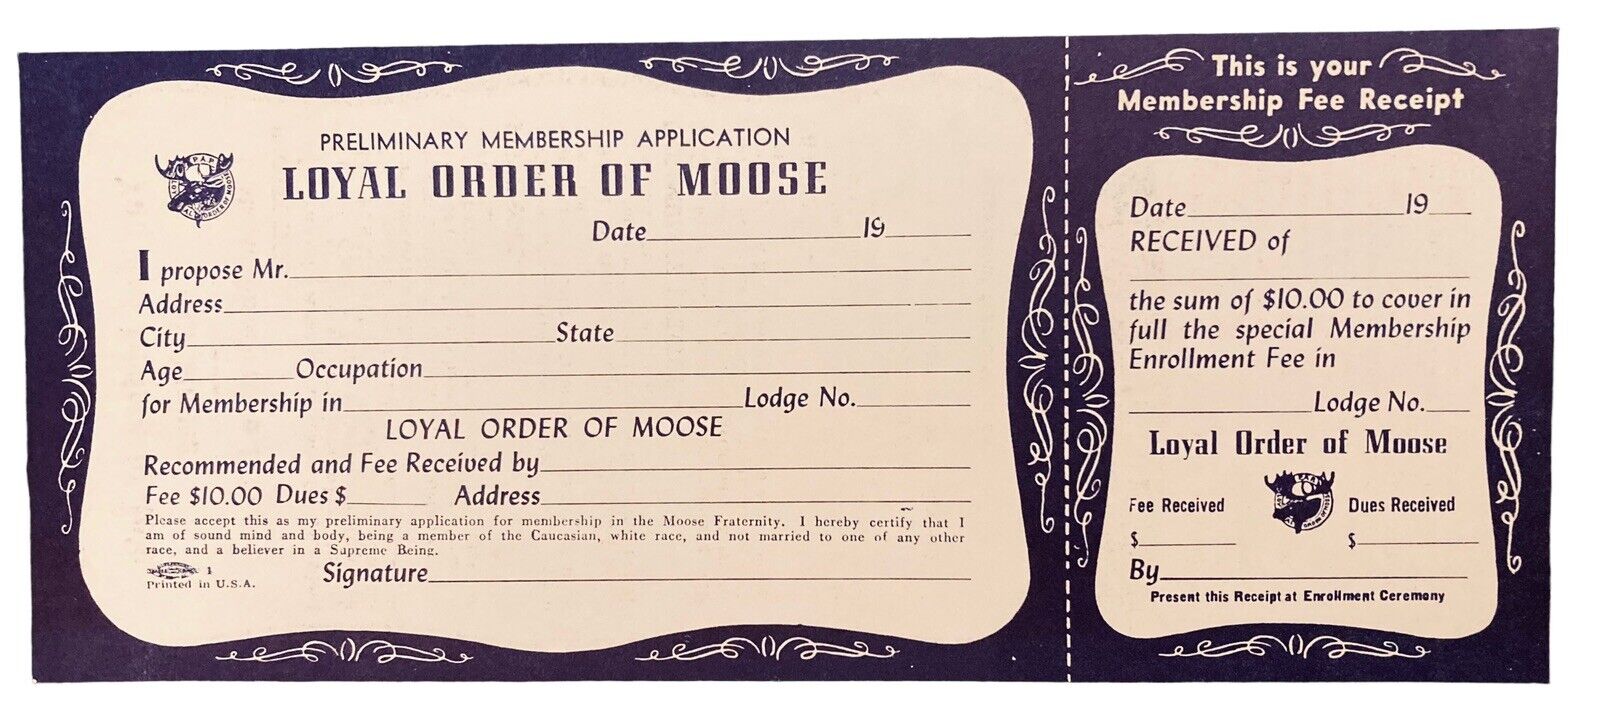 1950s Preliminary Membership Application Loyal Order of Moose Unused Blank